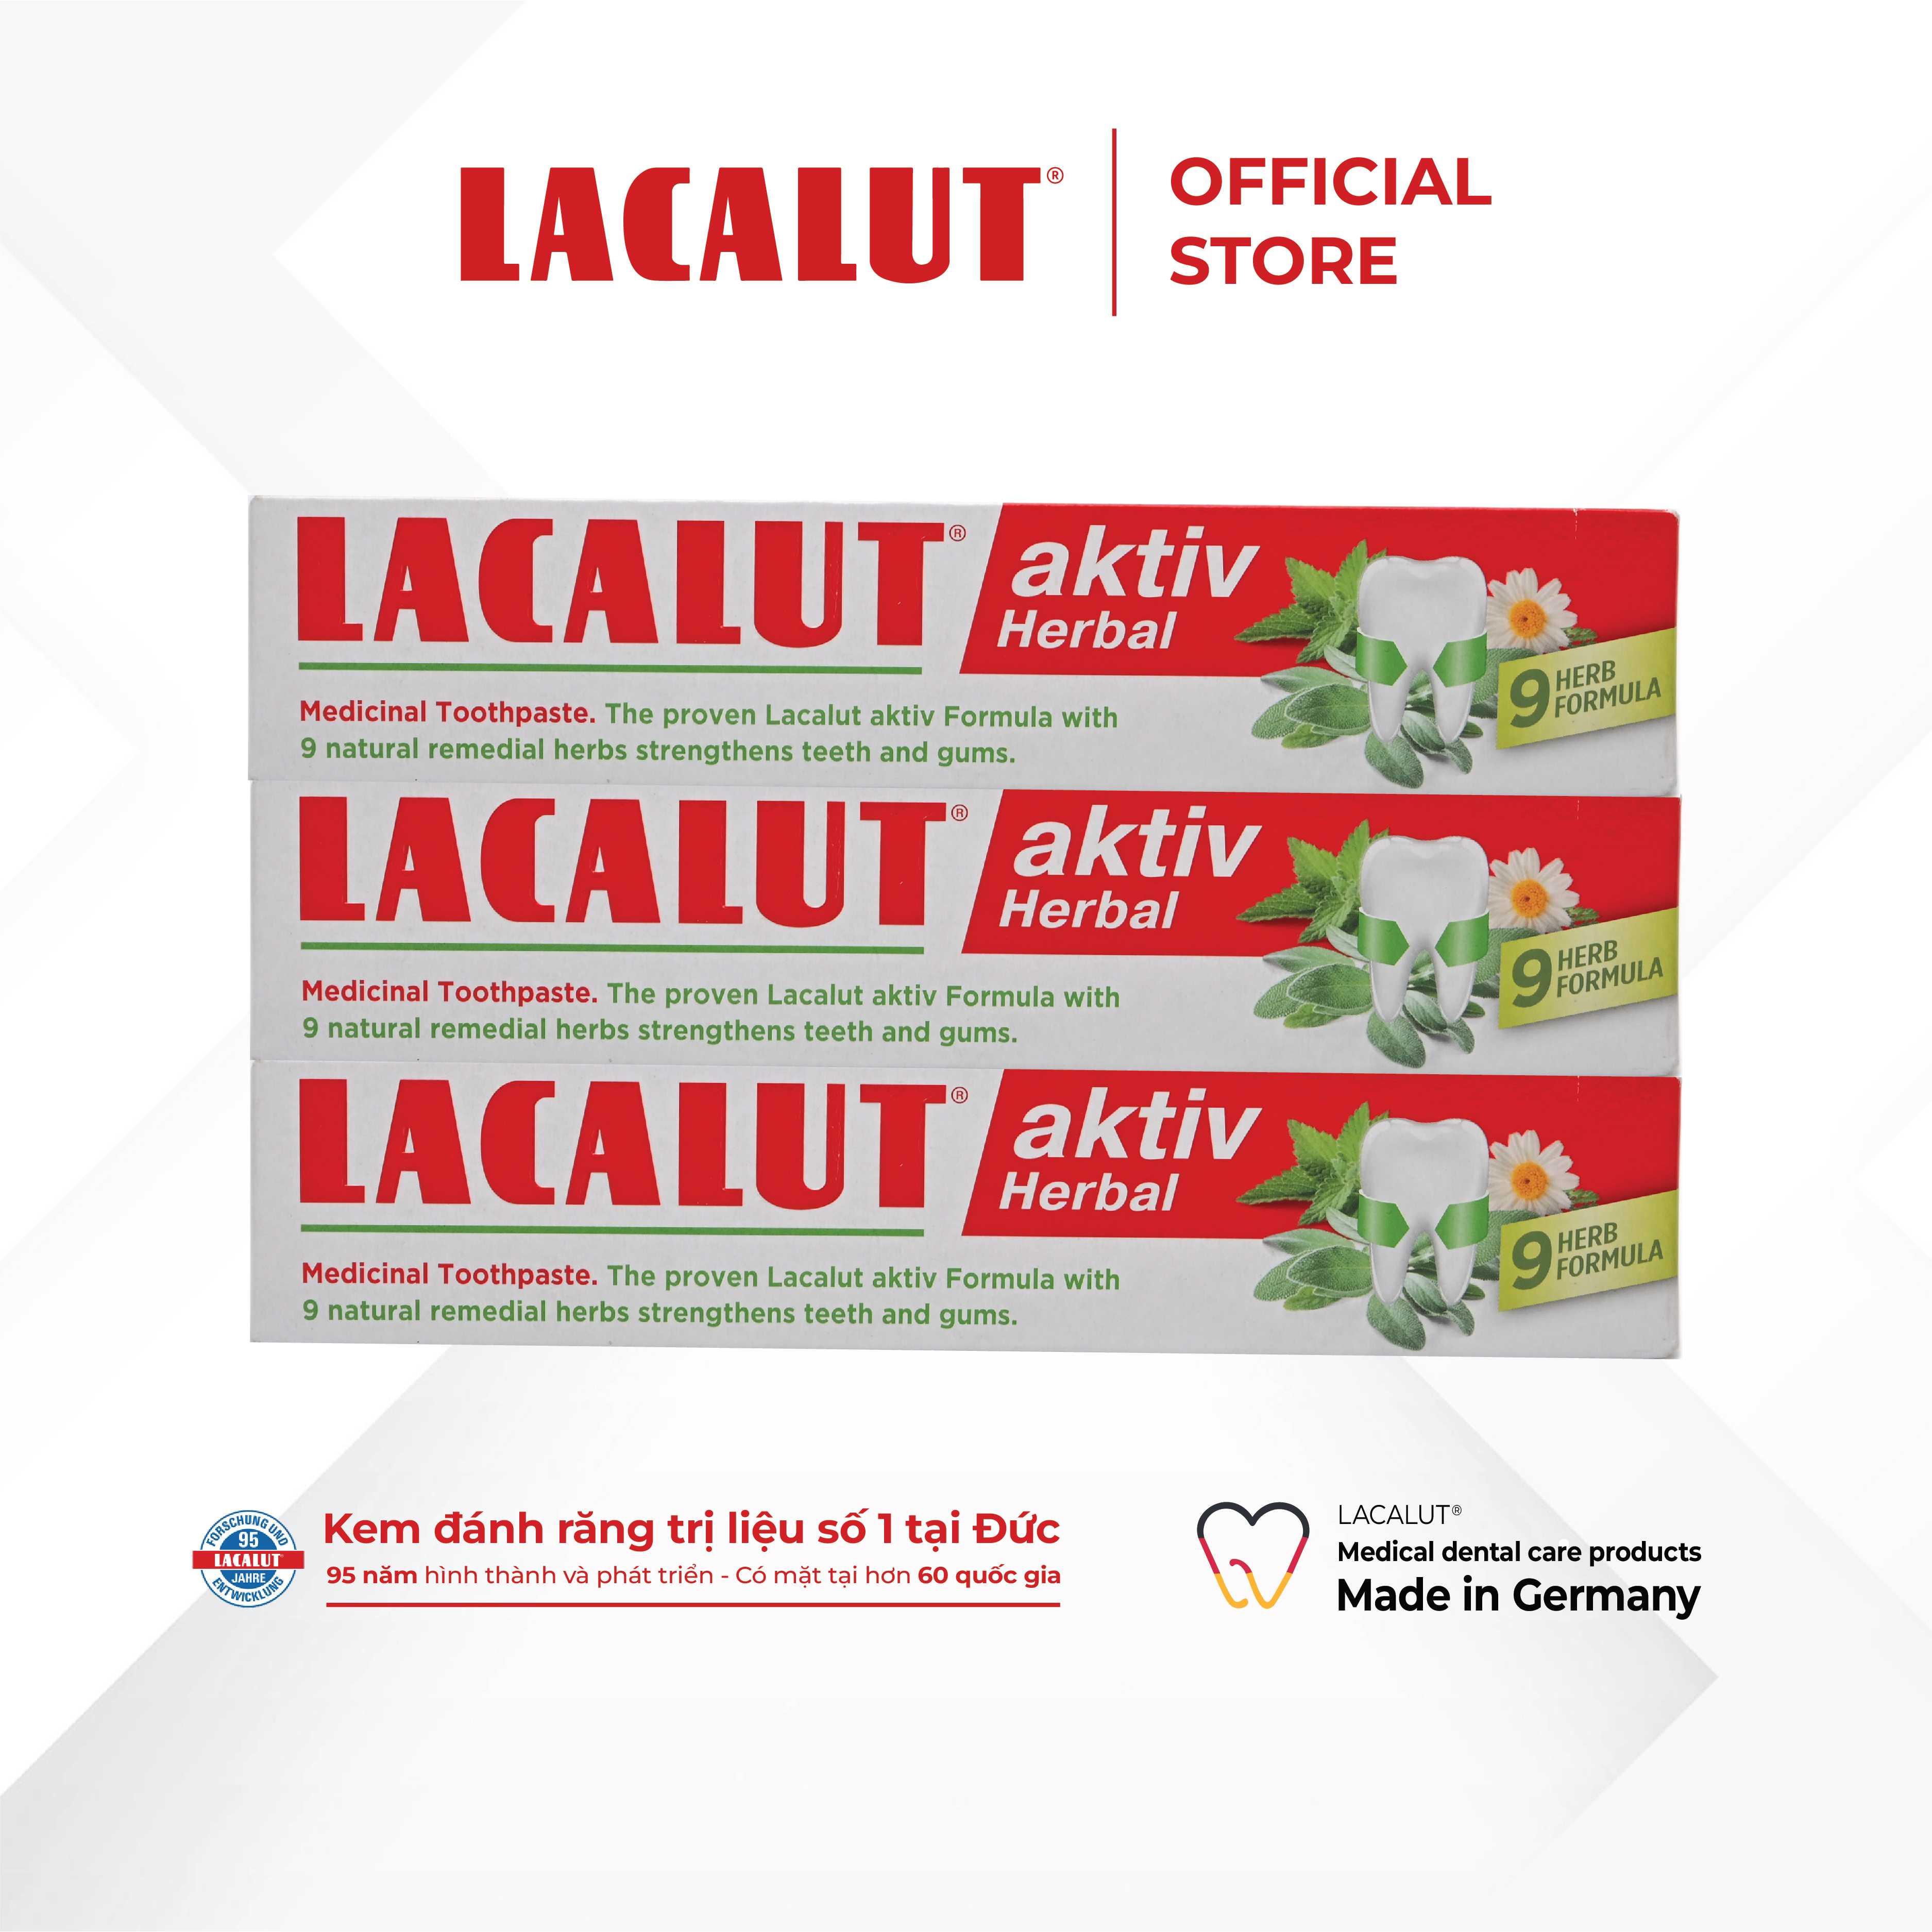 Combo 3 tuýp Lacalut Aktiv Herbal - Kem Đánh Răng Chống Tụt Lợi, Viêm Nướu